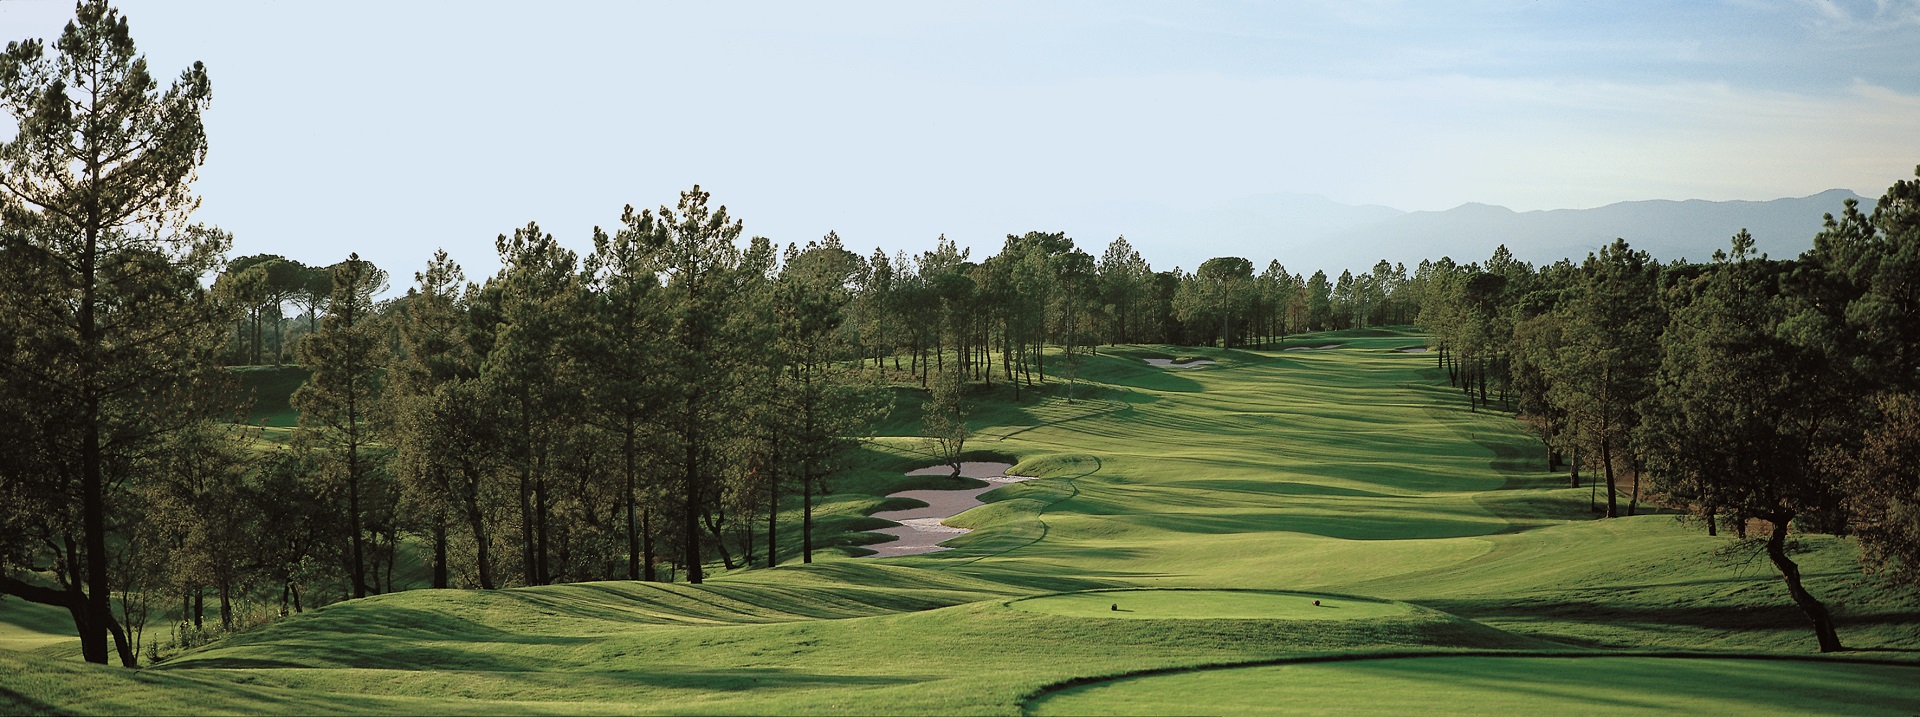 PGA Catalunya Resort | Tour Course